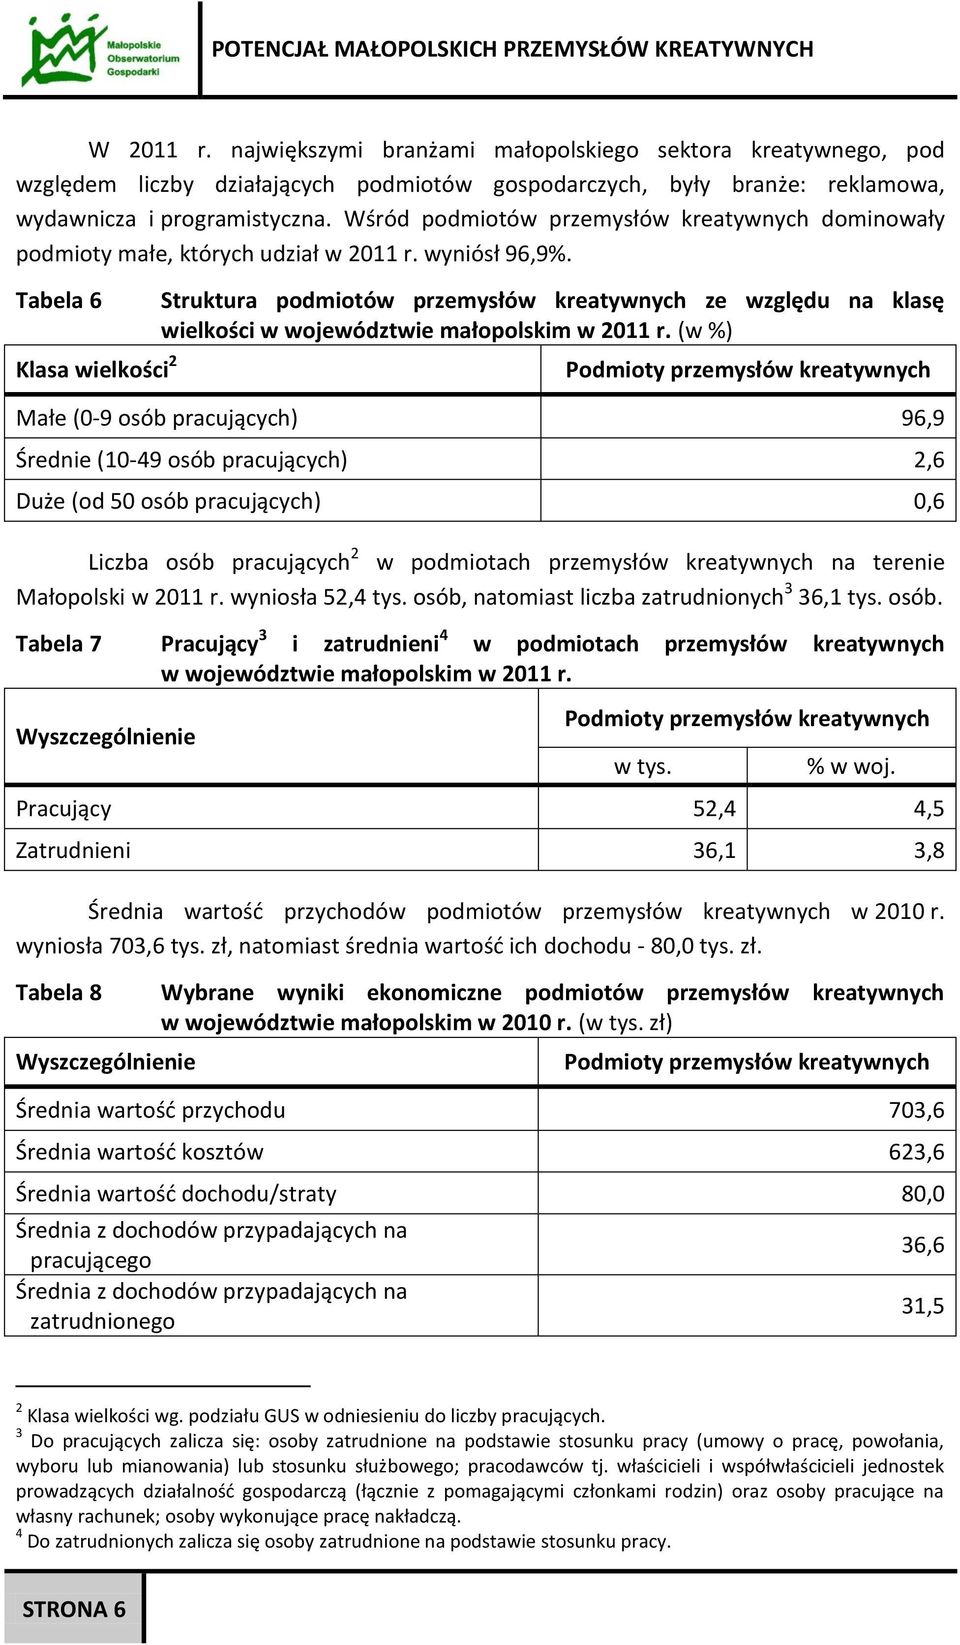 Tabela 6 Klasa wielkości 2 Struktura podmiotów przemysłów kreatywnych ze względu na klasę wielkości w województwie małopolskim w 2011 r.